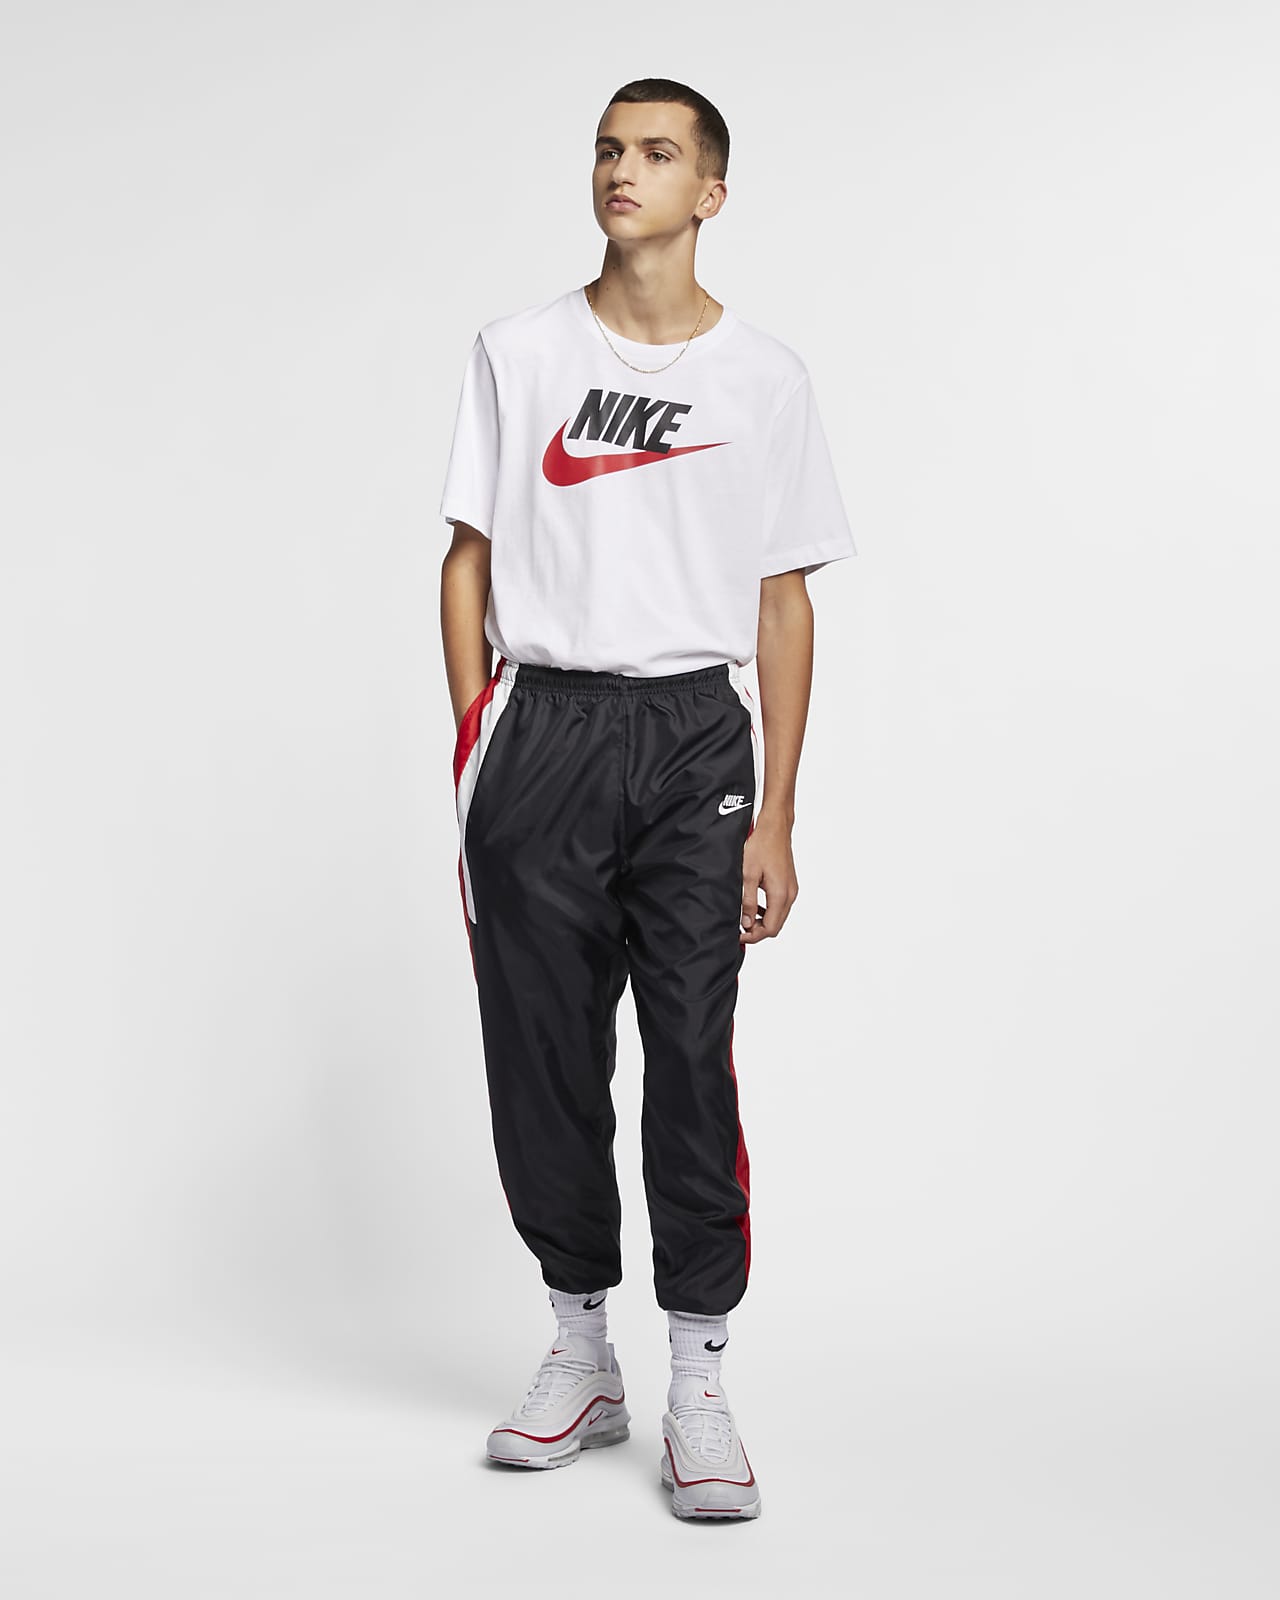 Nike Men's T-Shirt - Black - M